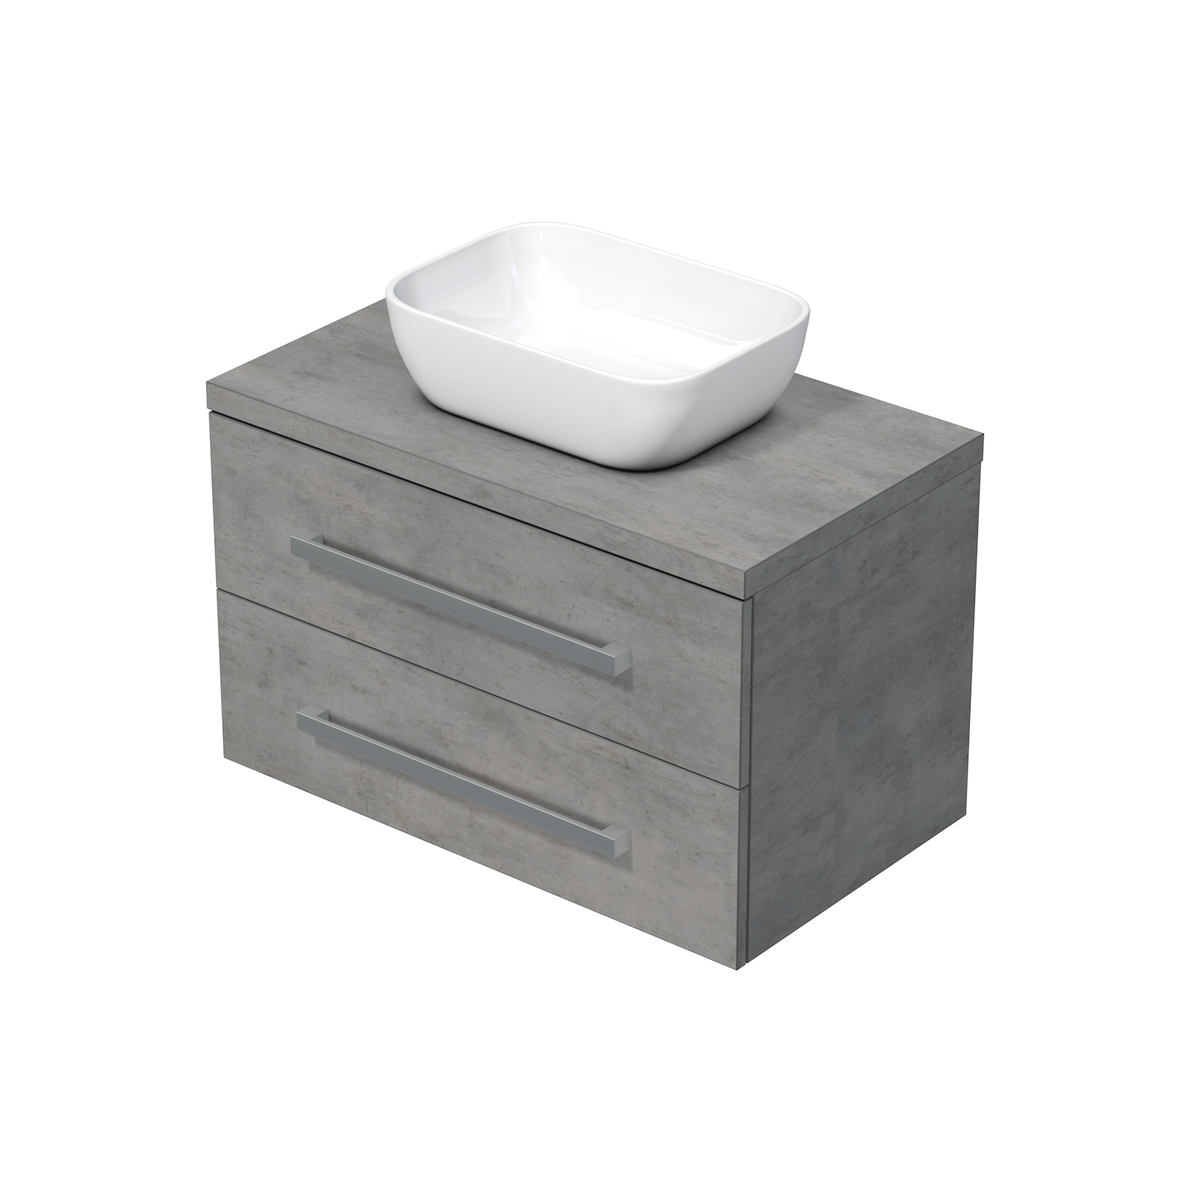 Koupelnová skříňka krycí deskou Naturel Cube Way 80x53x46 cm beton mat CUBE46803BE45 Naturel